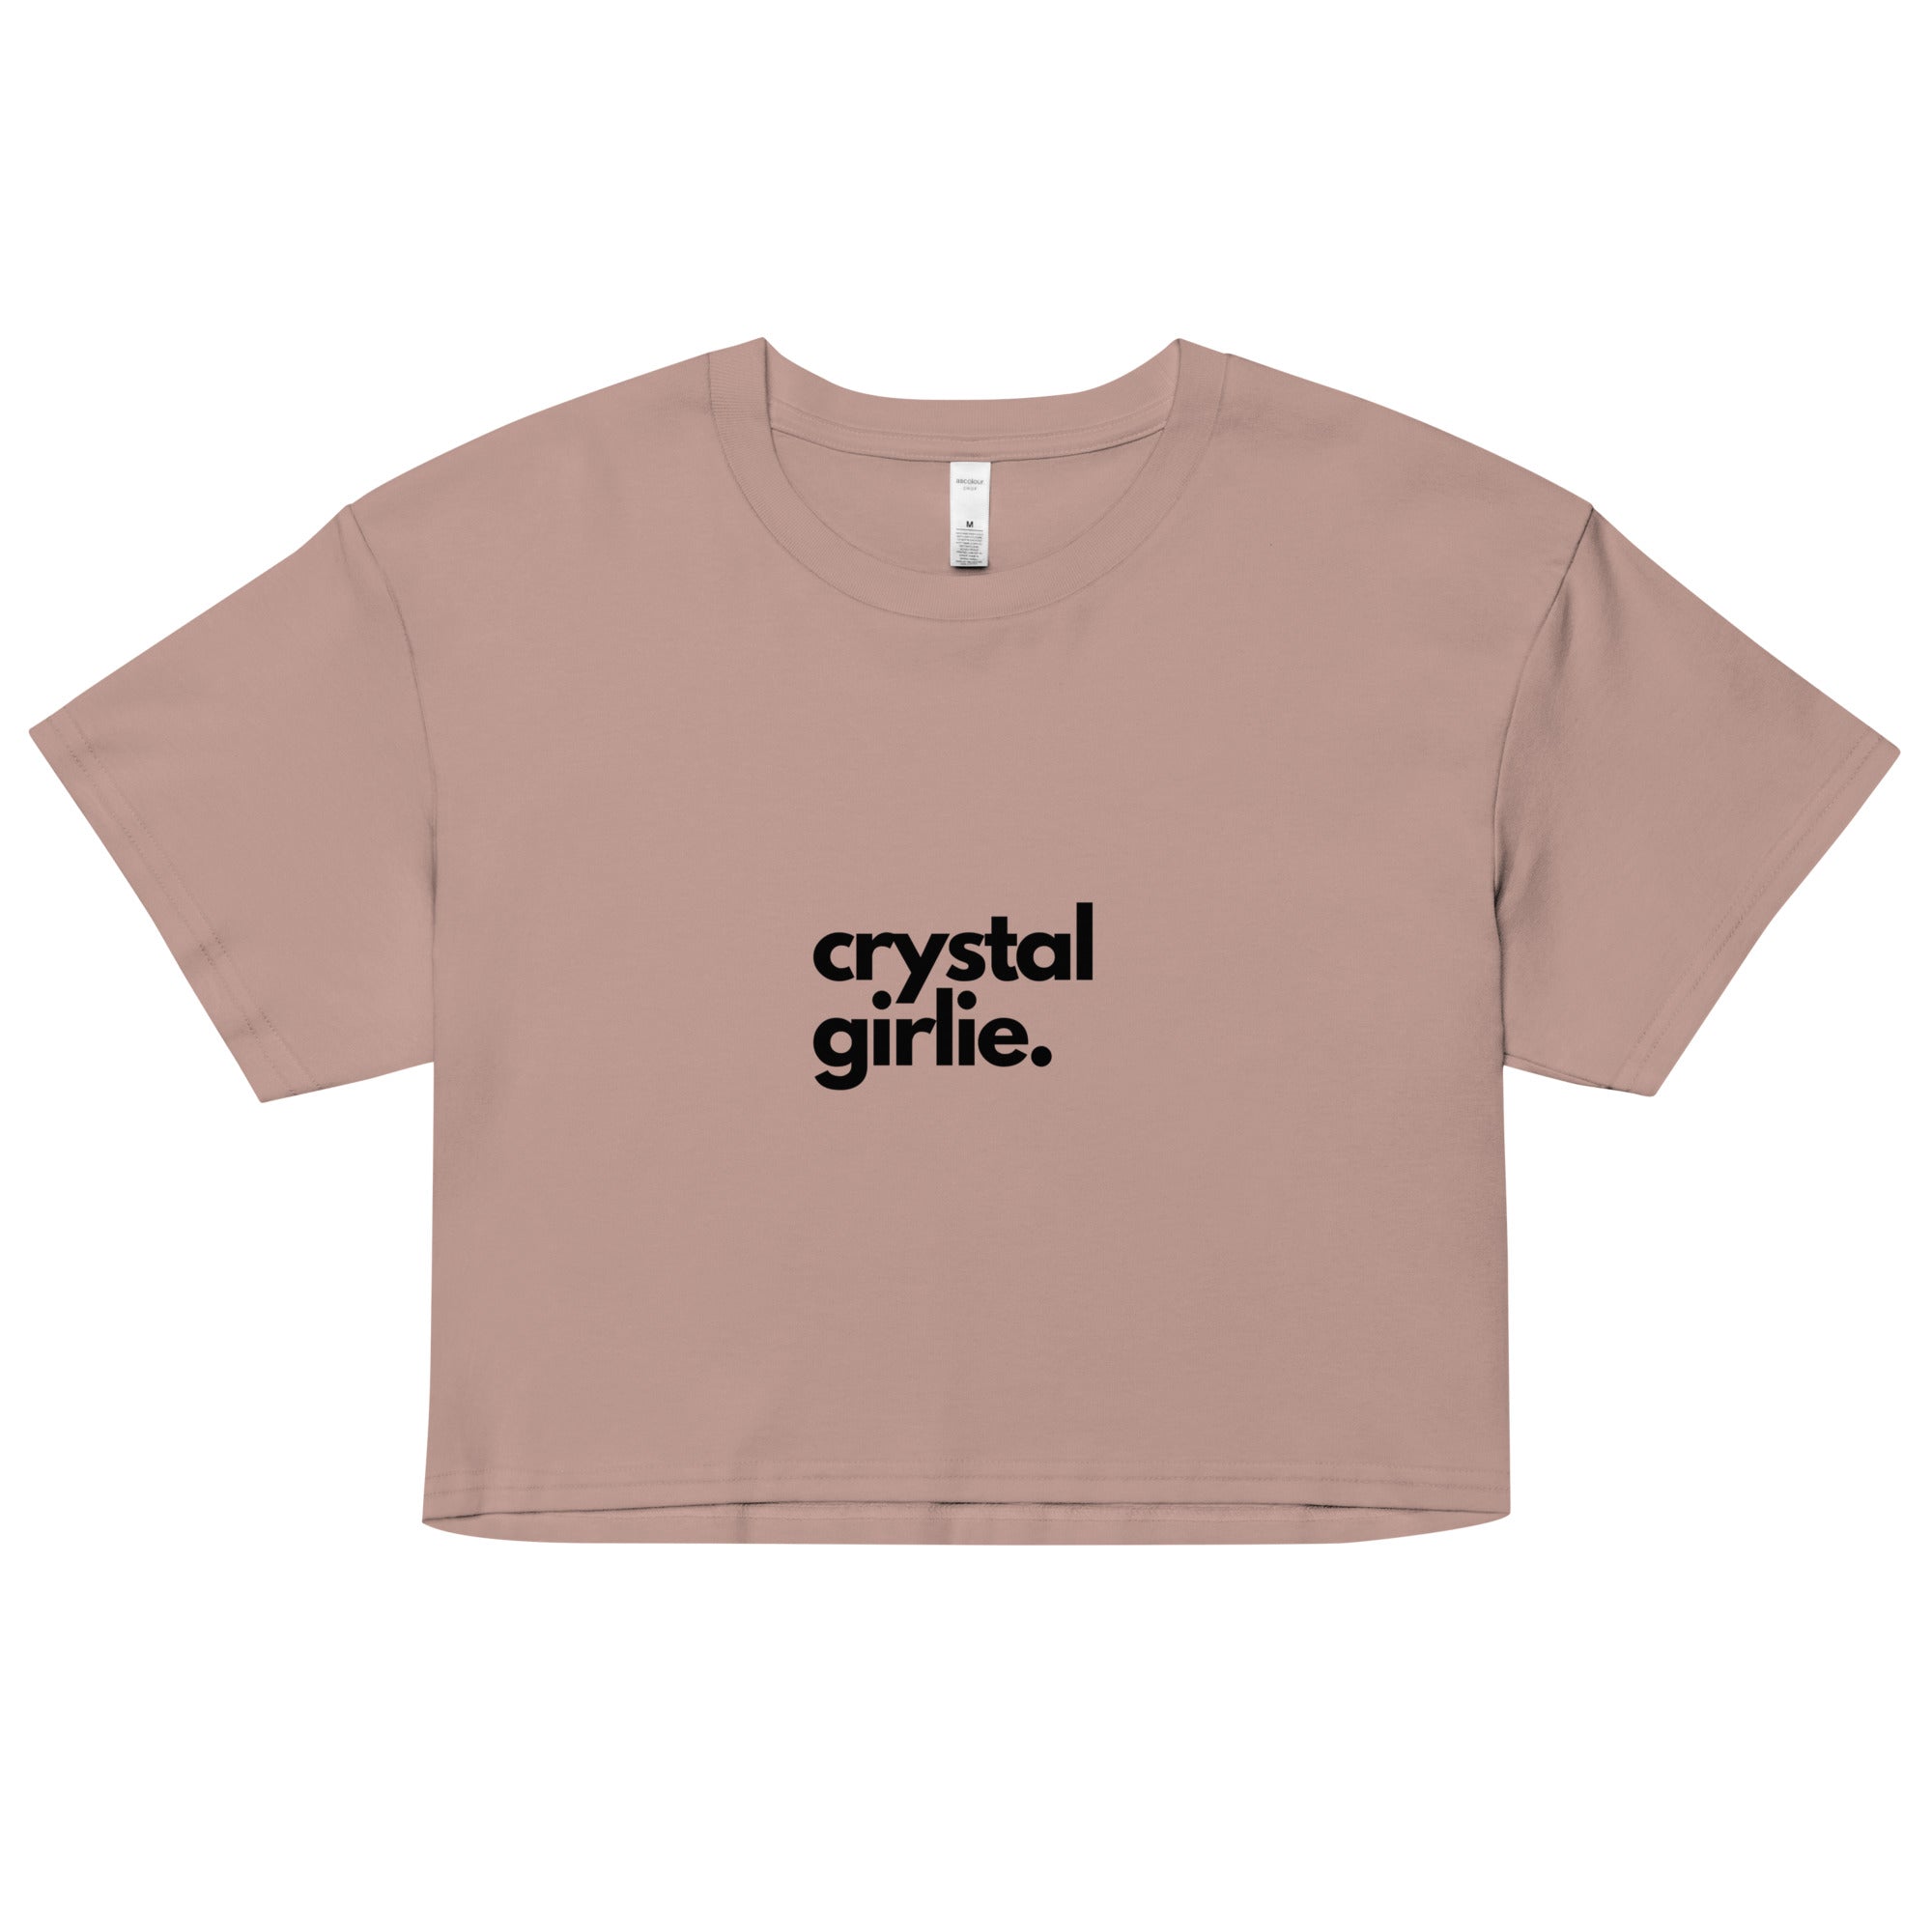 Crystal Girlie Crop Top (Black Print)